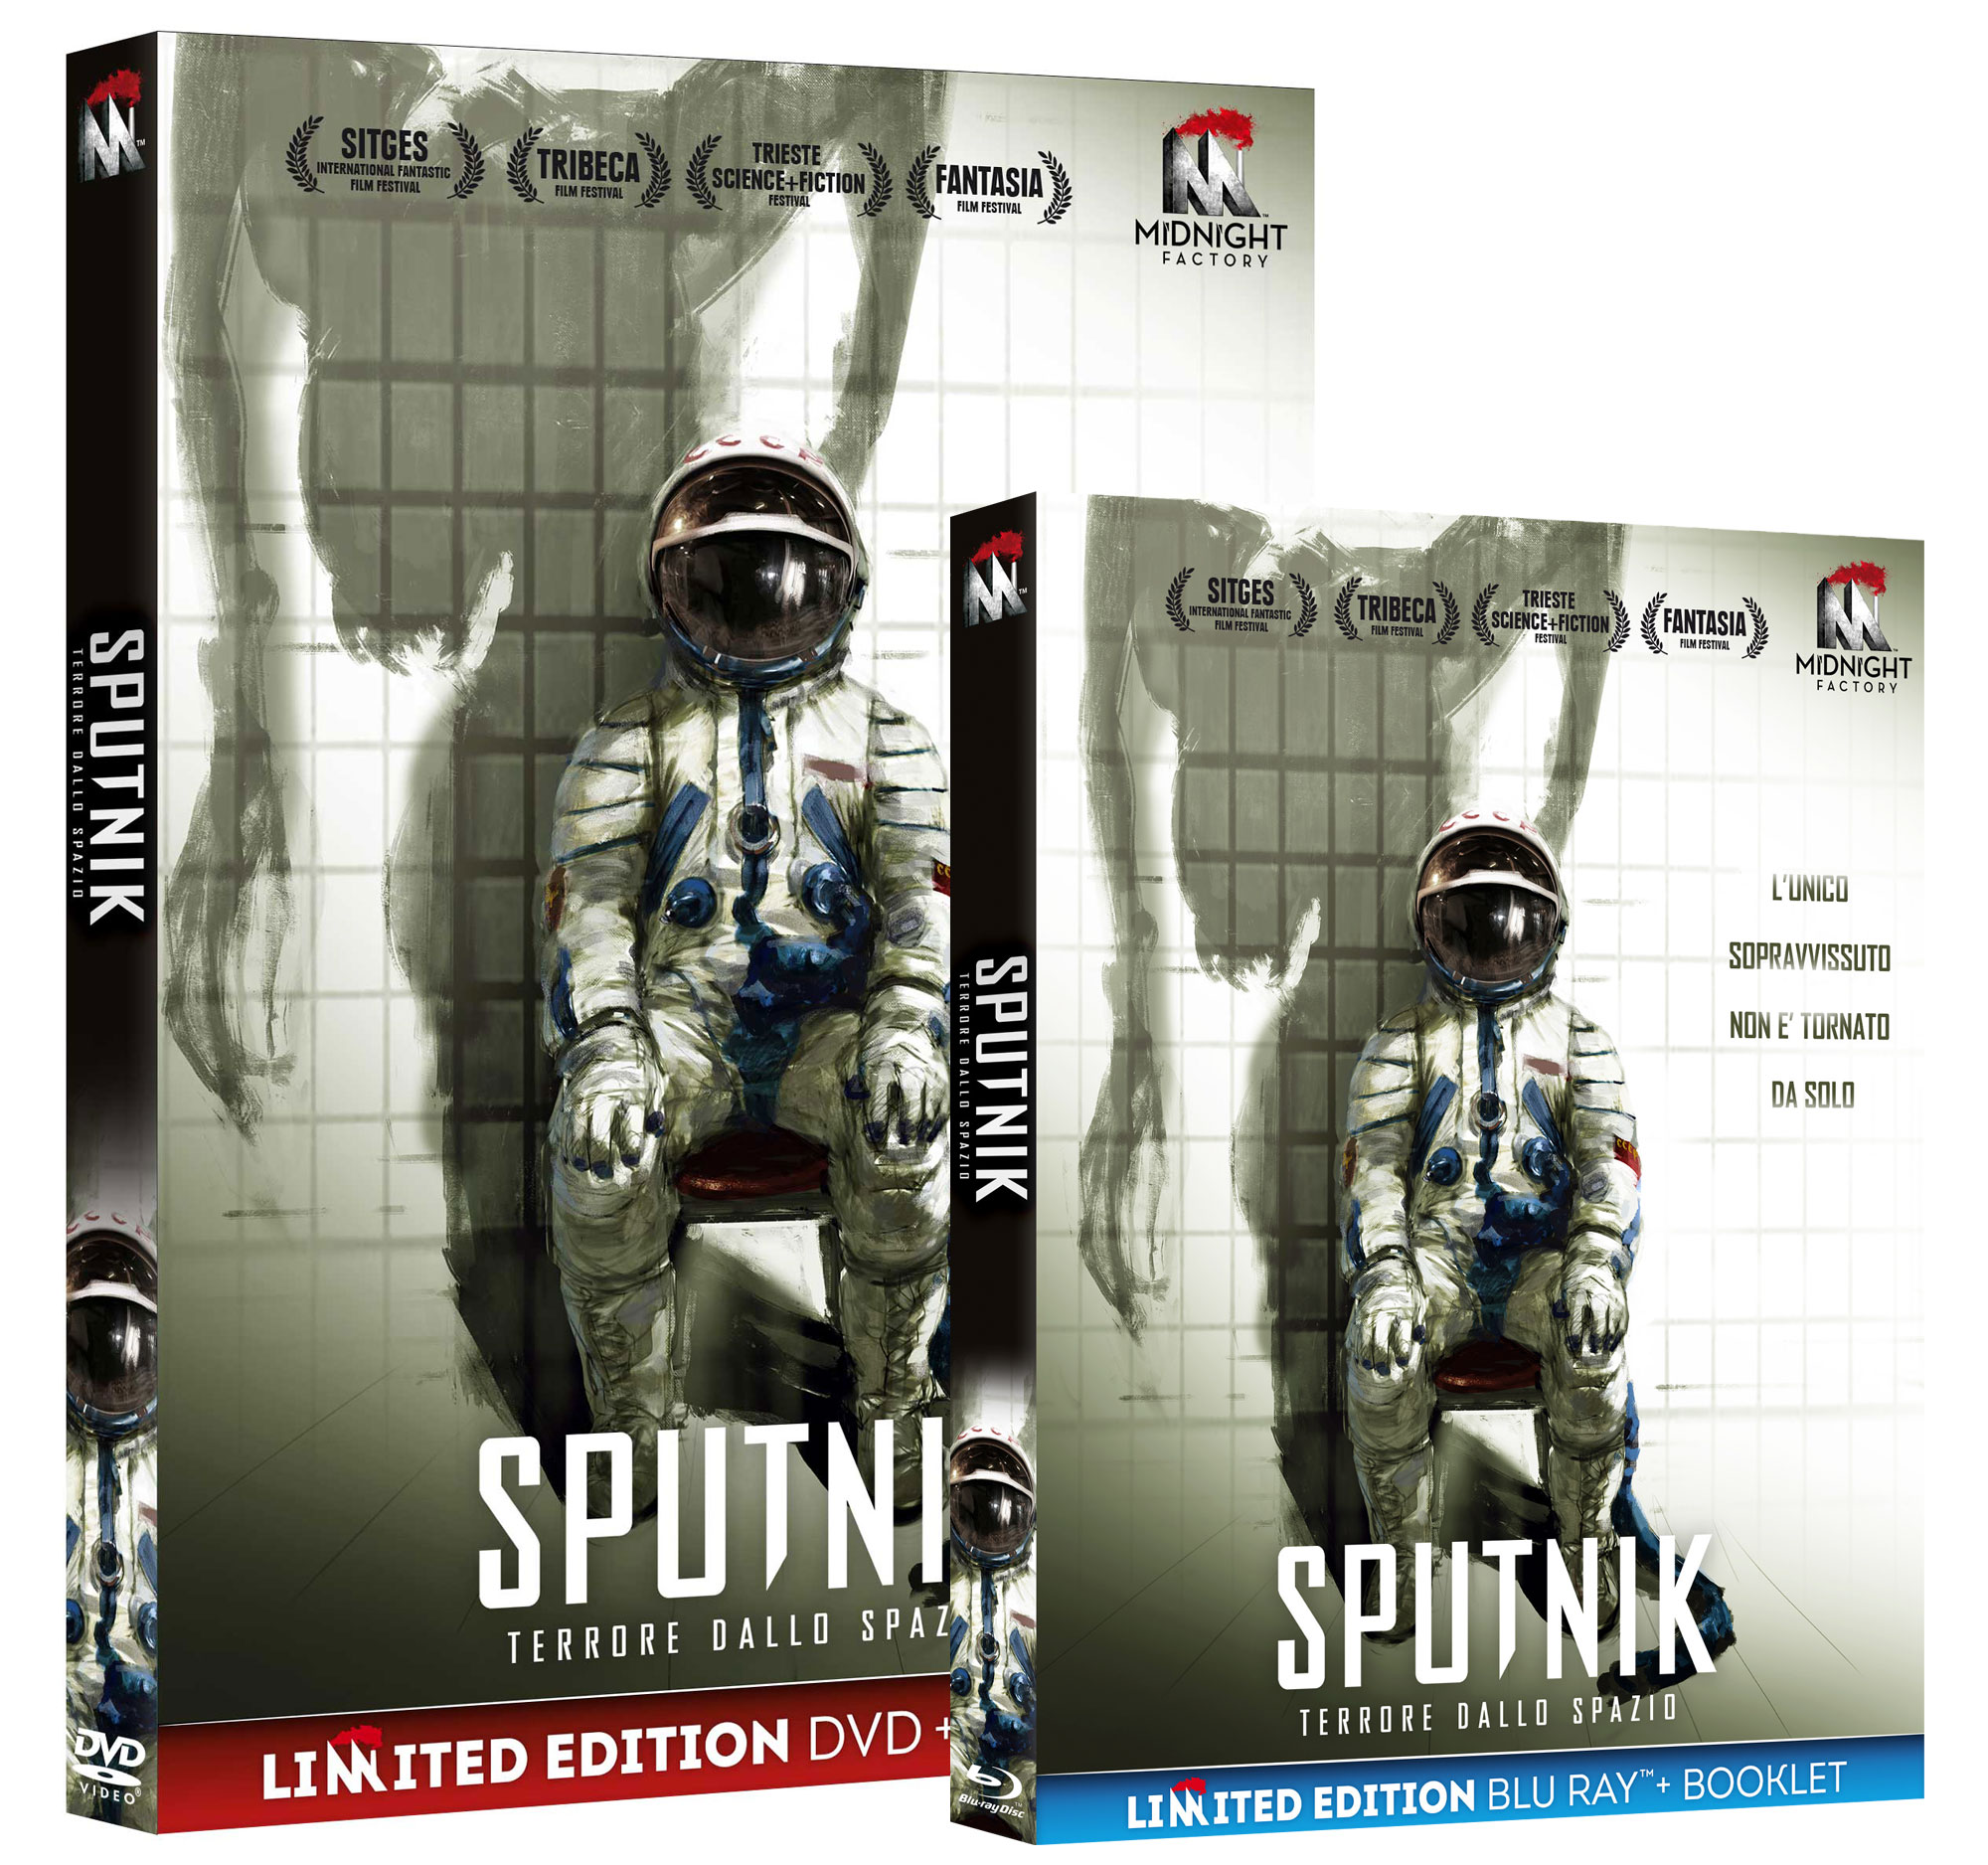 Sputnik - Terrore dallo spazio in DVD e Blu-ray